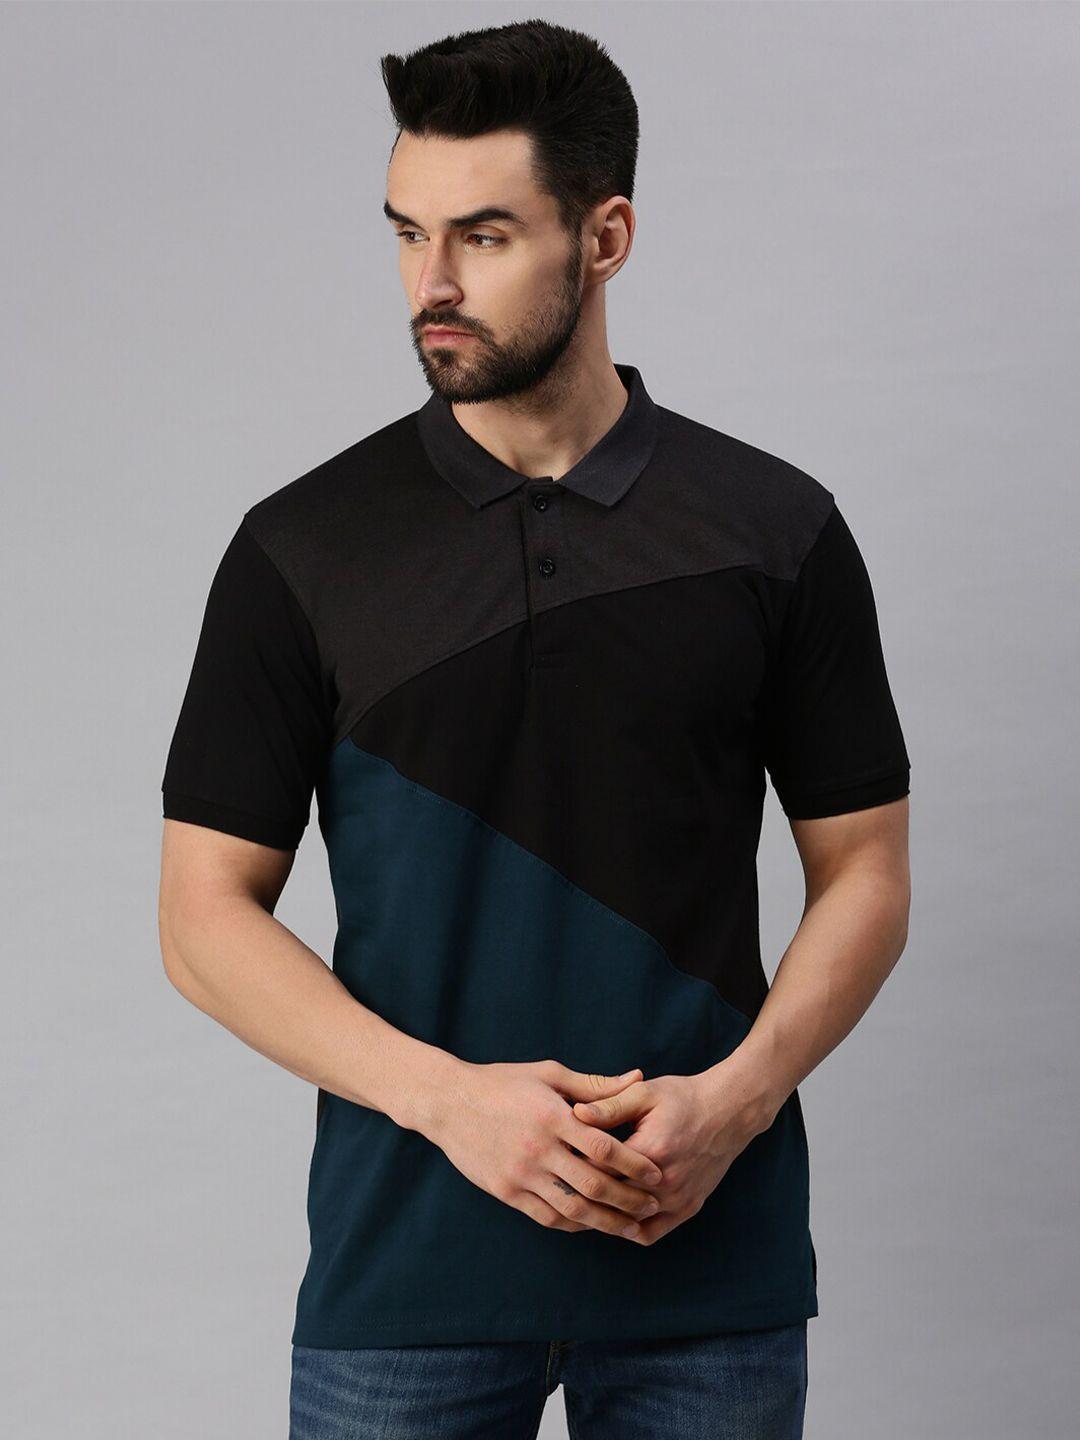 peppyzone men grey & black colourblocked polo collar cotton t-shirt